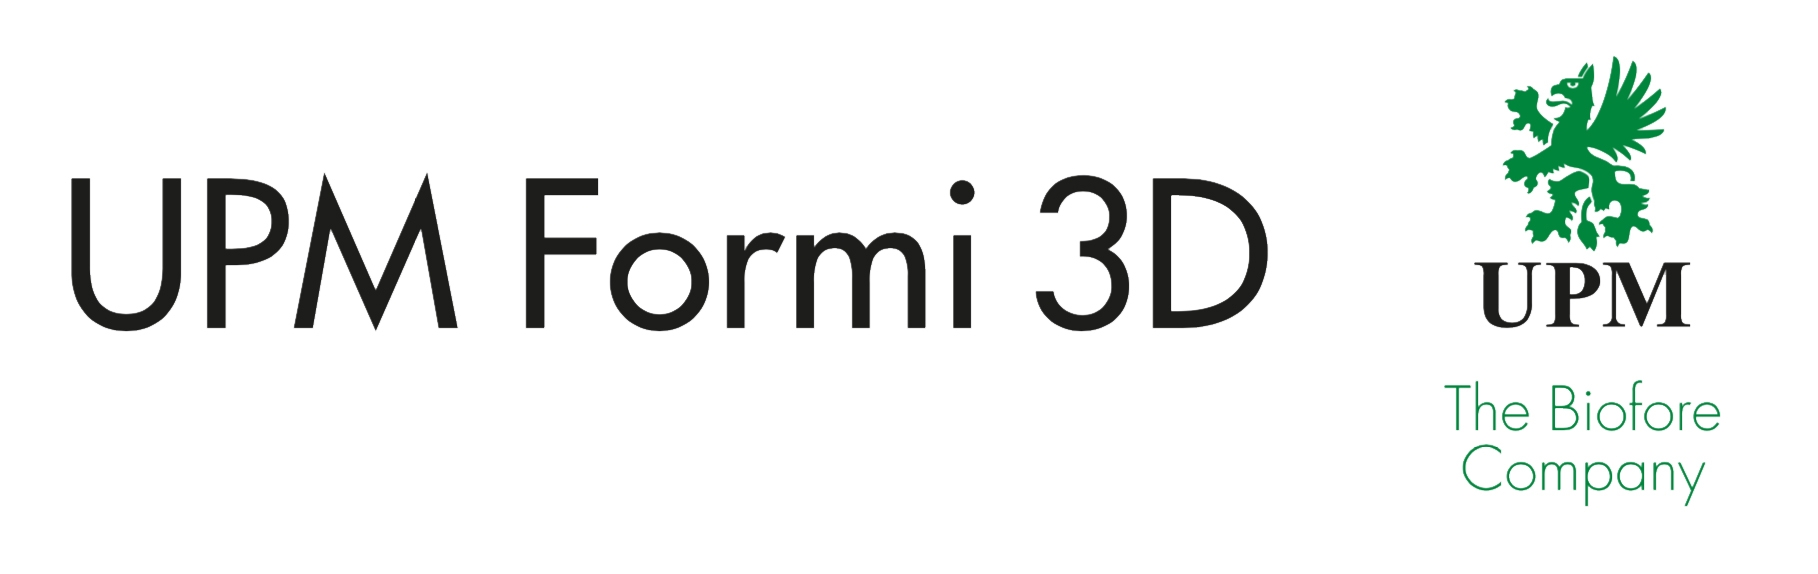 UPM Formi 3D